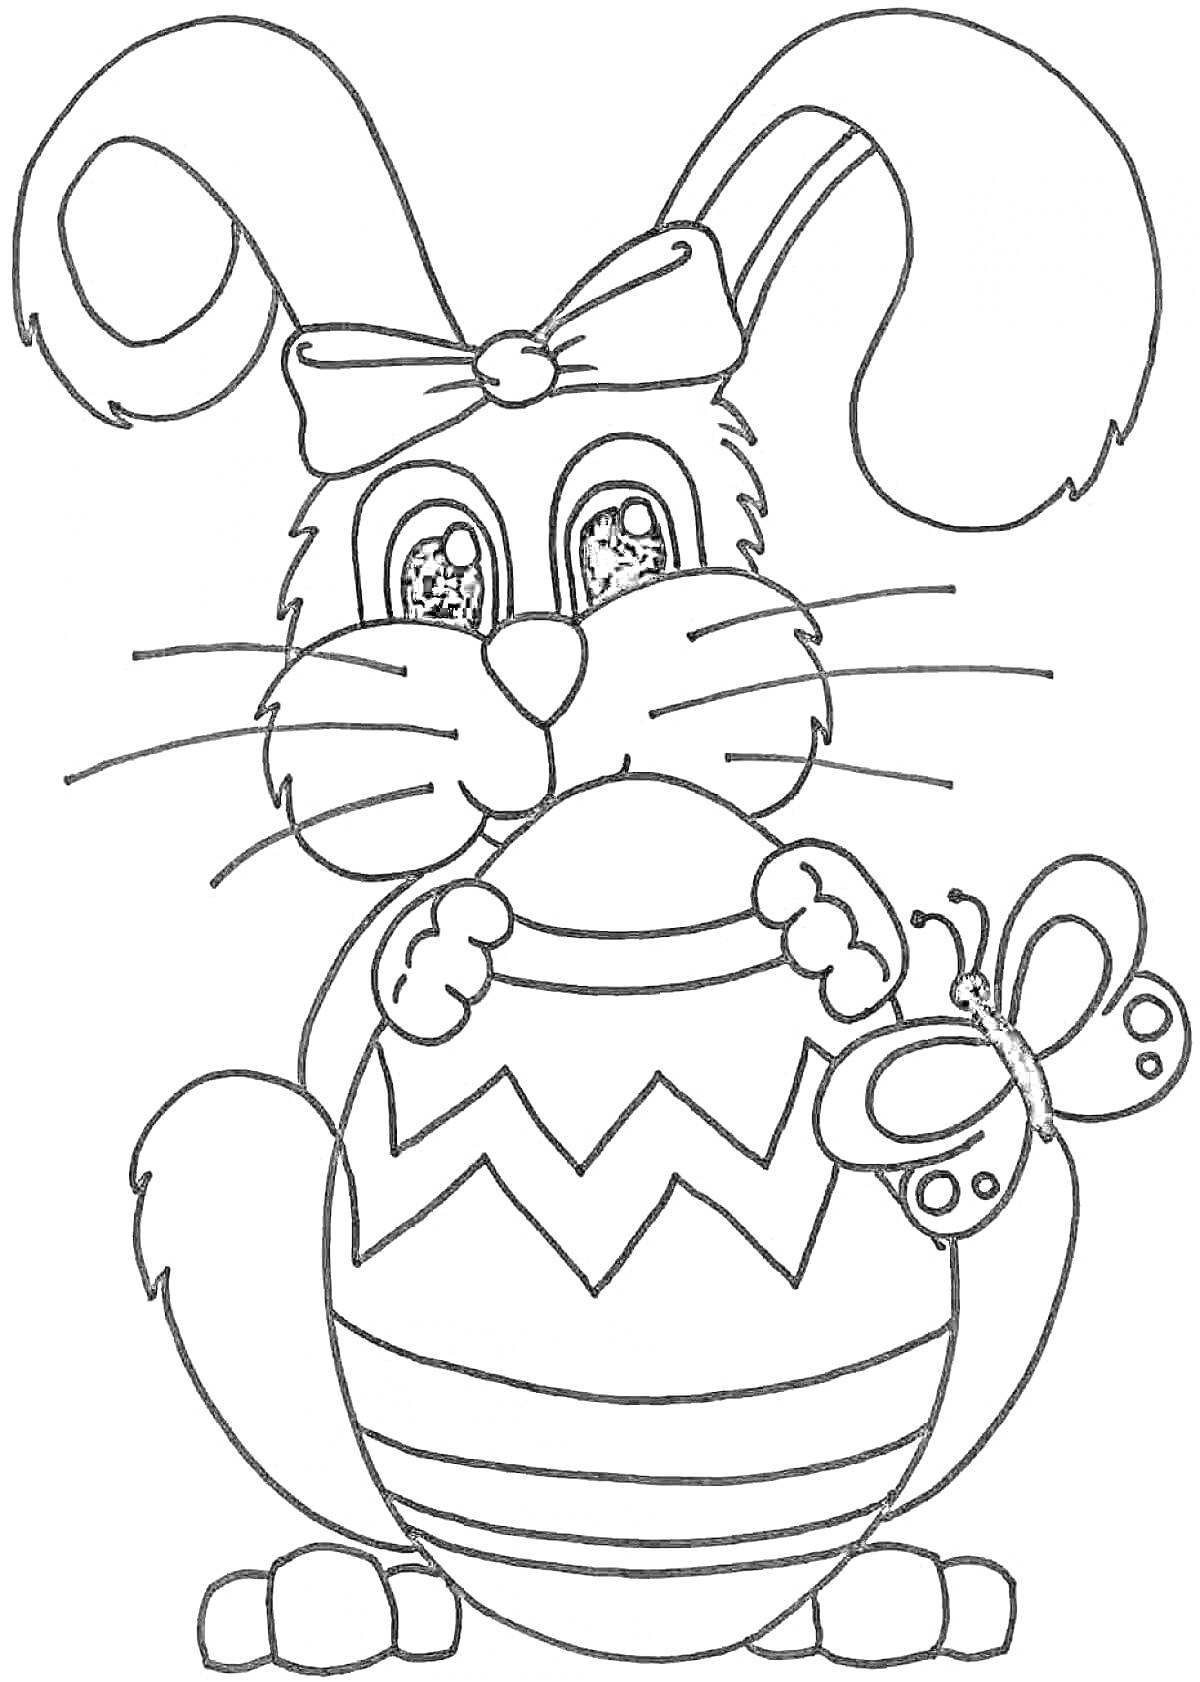 новогодний кролик с бантом, держащий яйцо с зигзагами и бабочкой